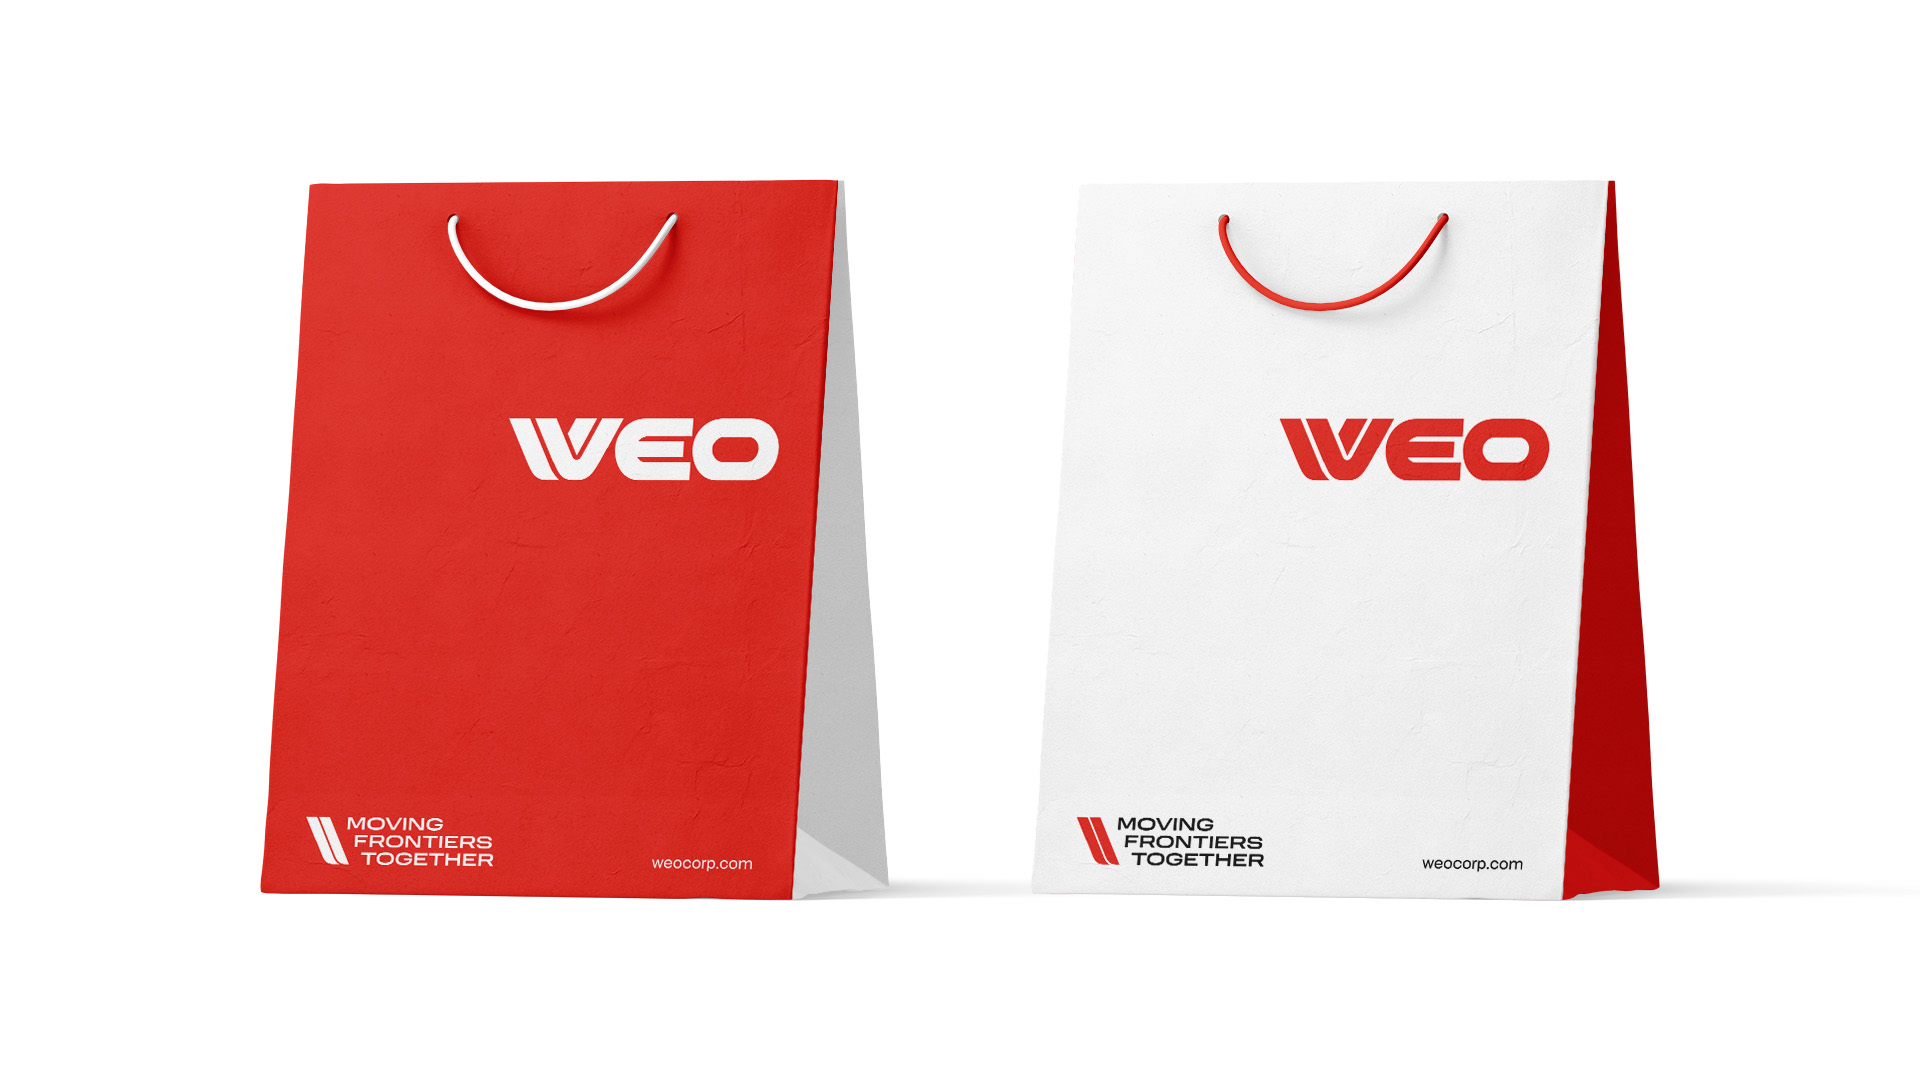 WEO bags